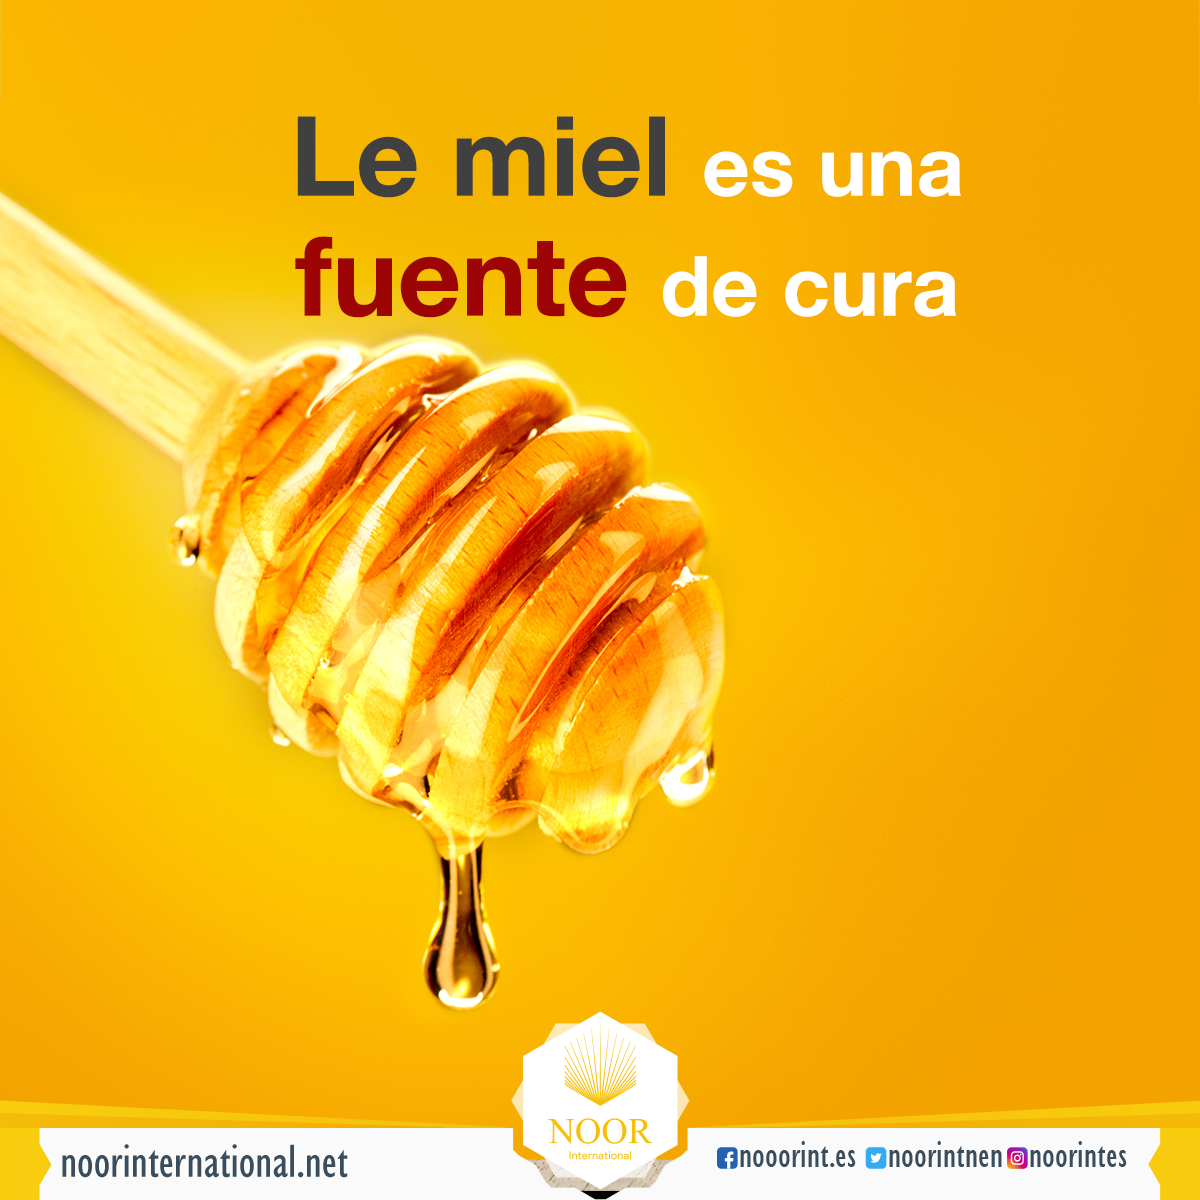 La miel es una fuente de cura